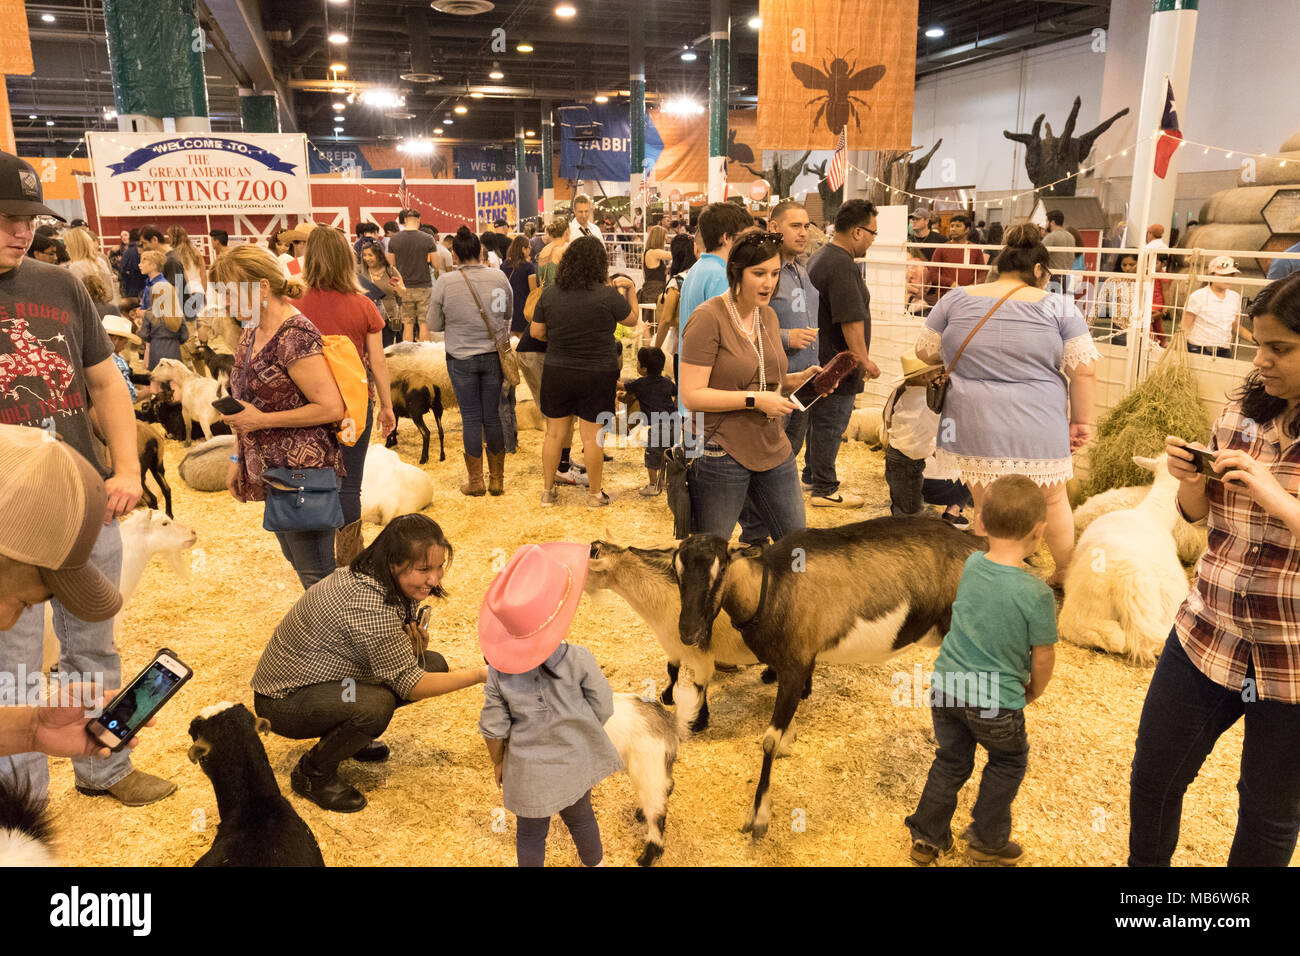 Eltern, Kinder und Tiere im Streichelzoo, Houston Livestock Show und Rodeo, Houston, Texas, USA Stockfoto